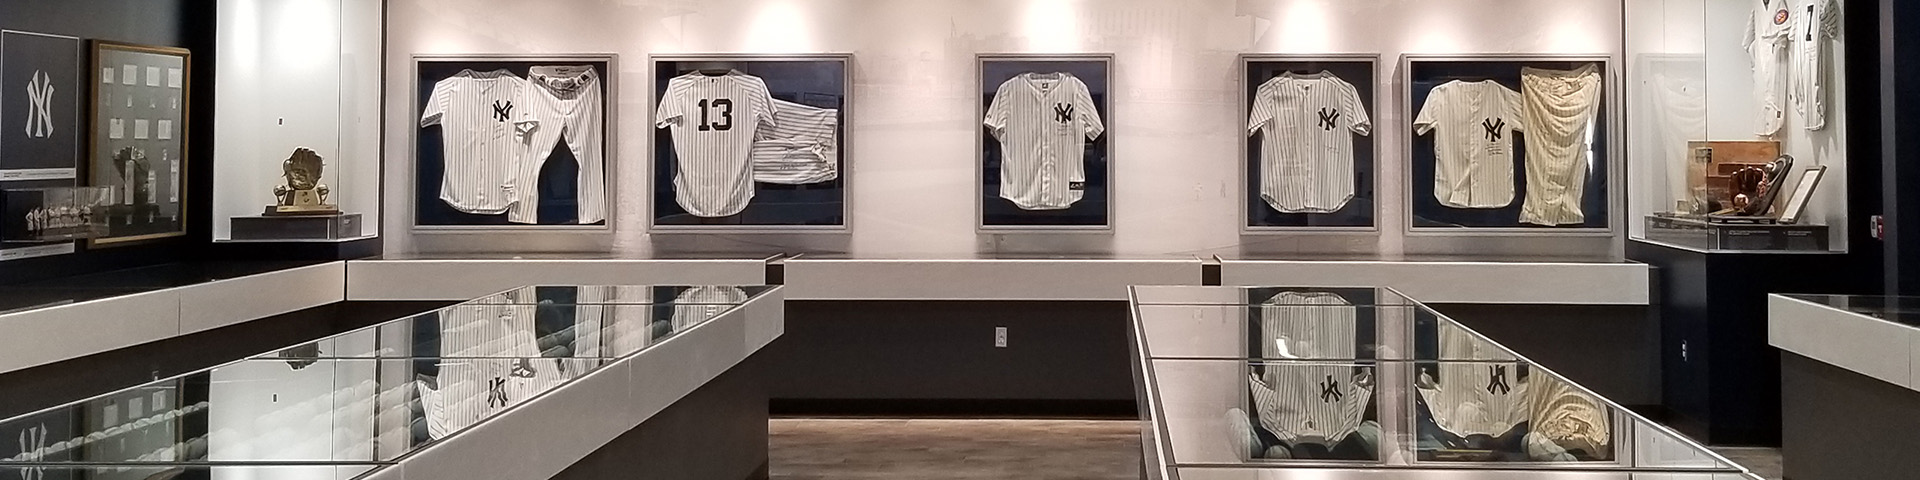 Yankees uniforms on display